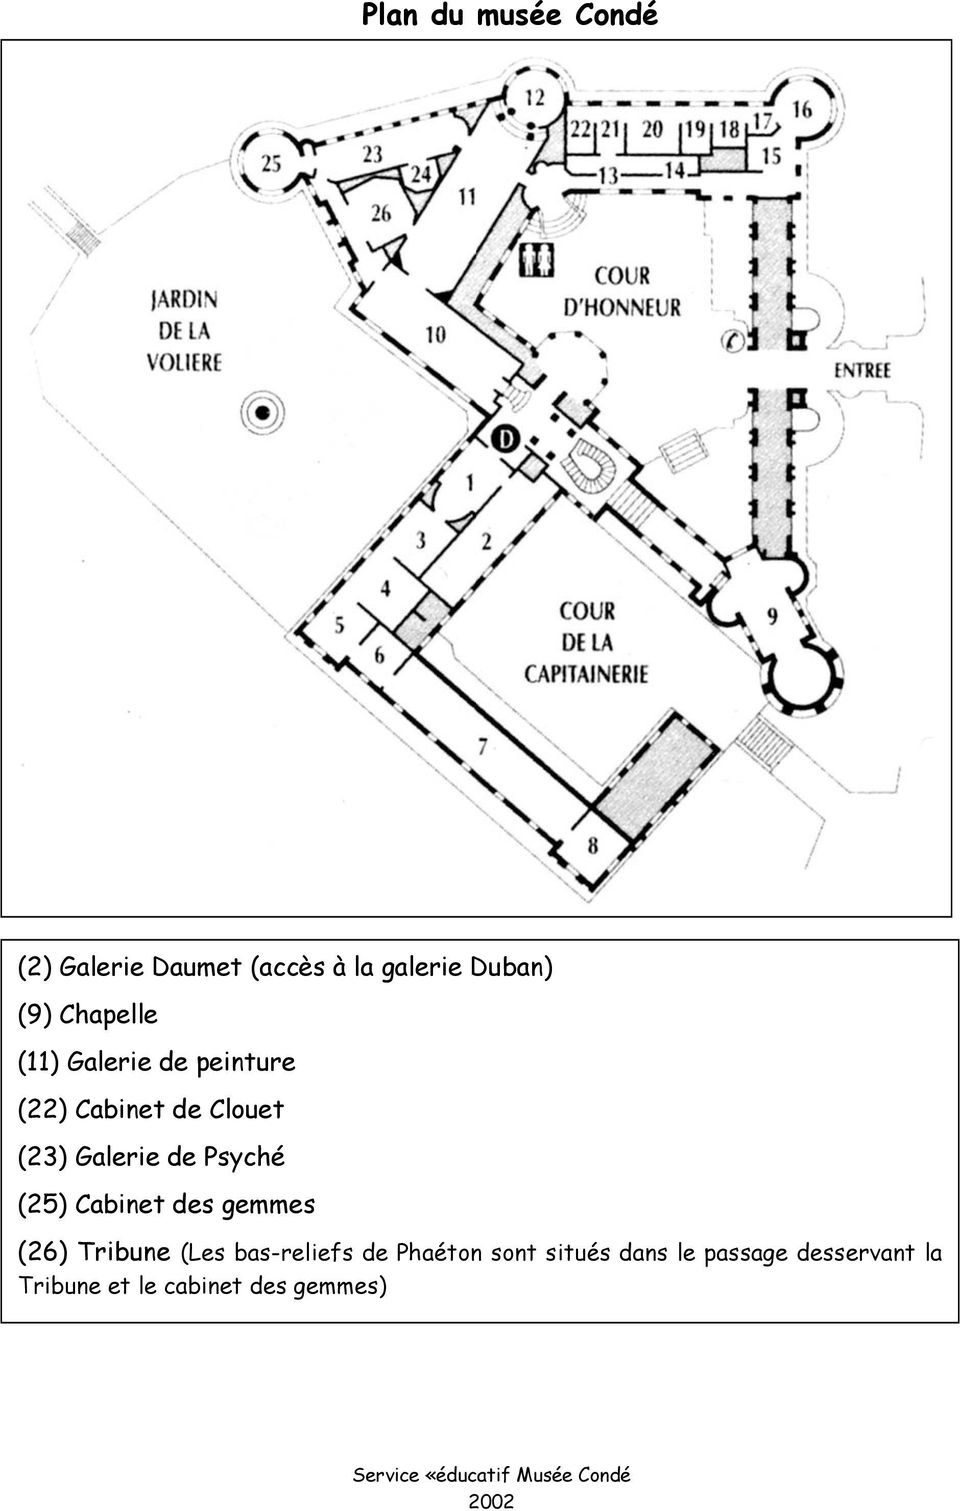 Cabinet des gemmes (26) Tribune (Les bas-reliefs de Phaétn snt situés dans le